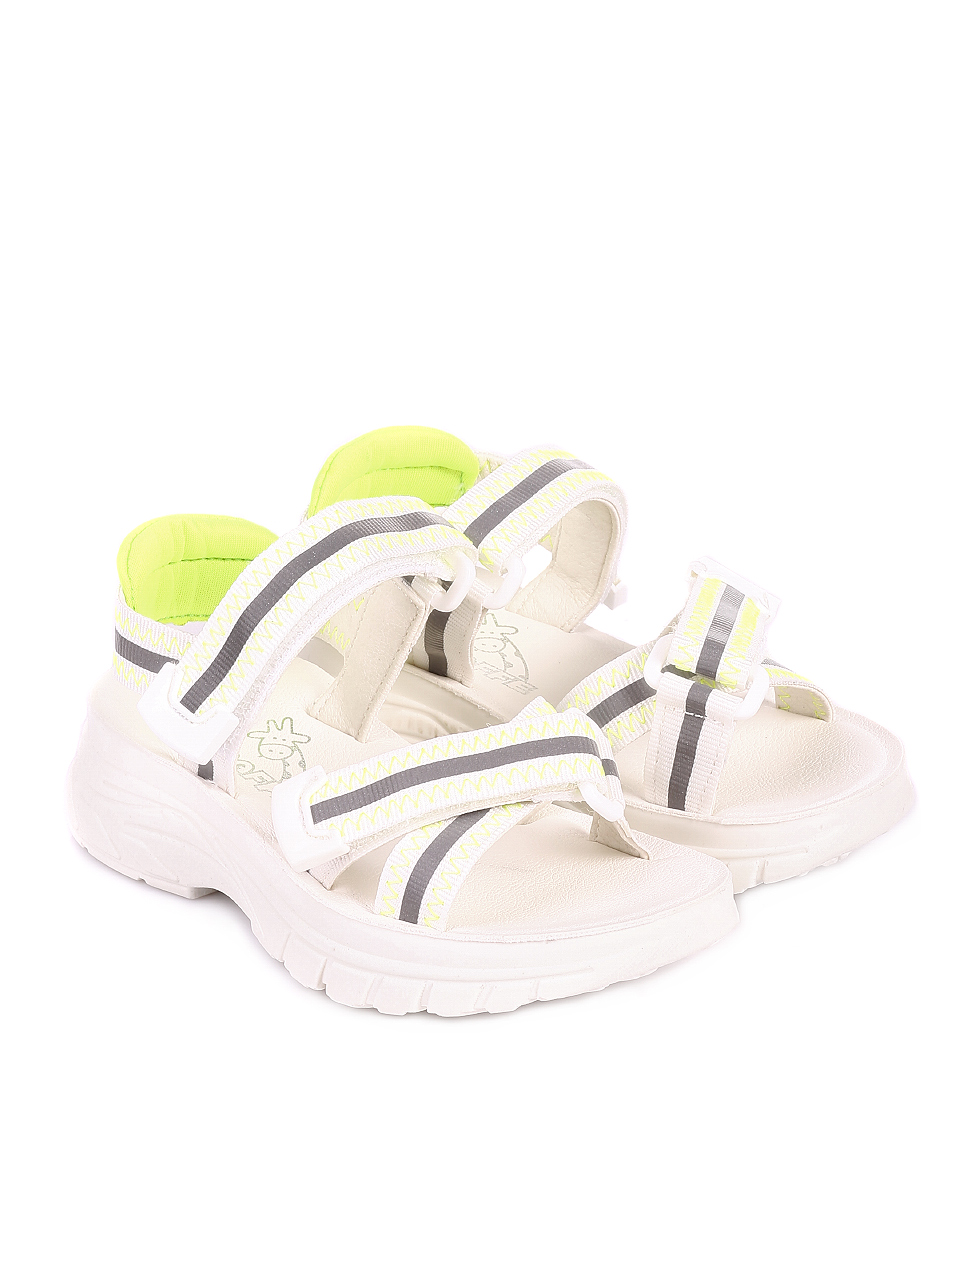 Ежедневни детски сандали в бяло и жълто 17F-20316 lime 